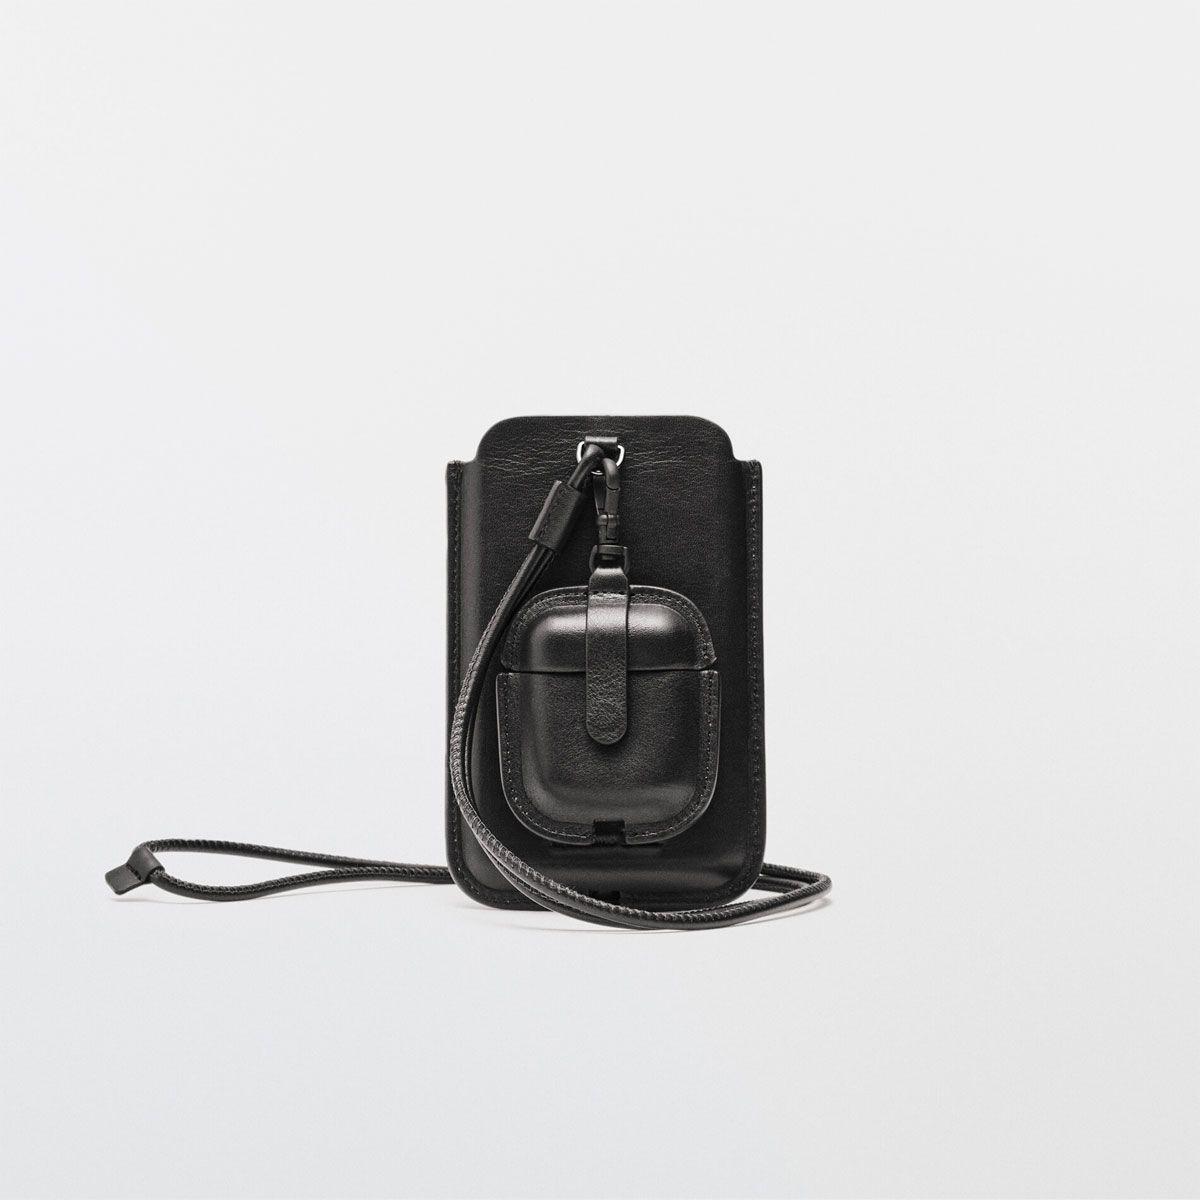 Funda de piel en color negro para iPhone y AirPods, de edición limitada en Massimo Dutti